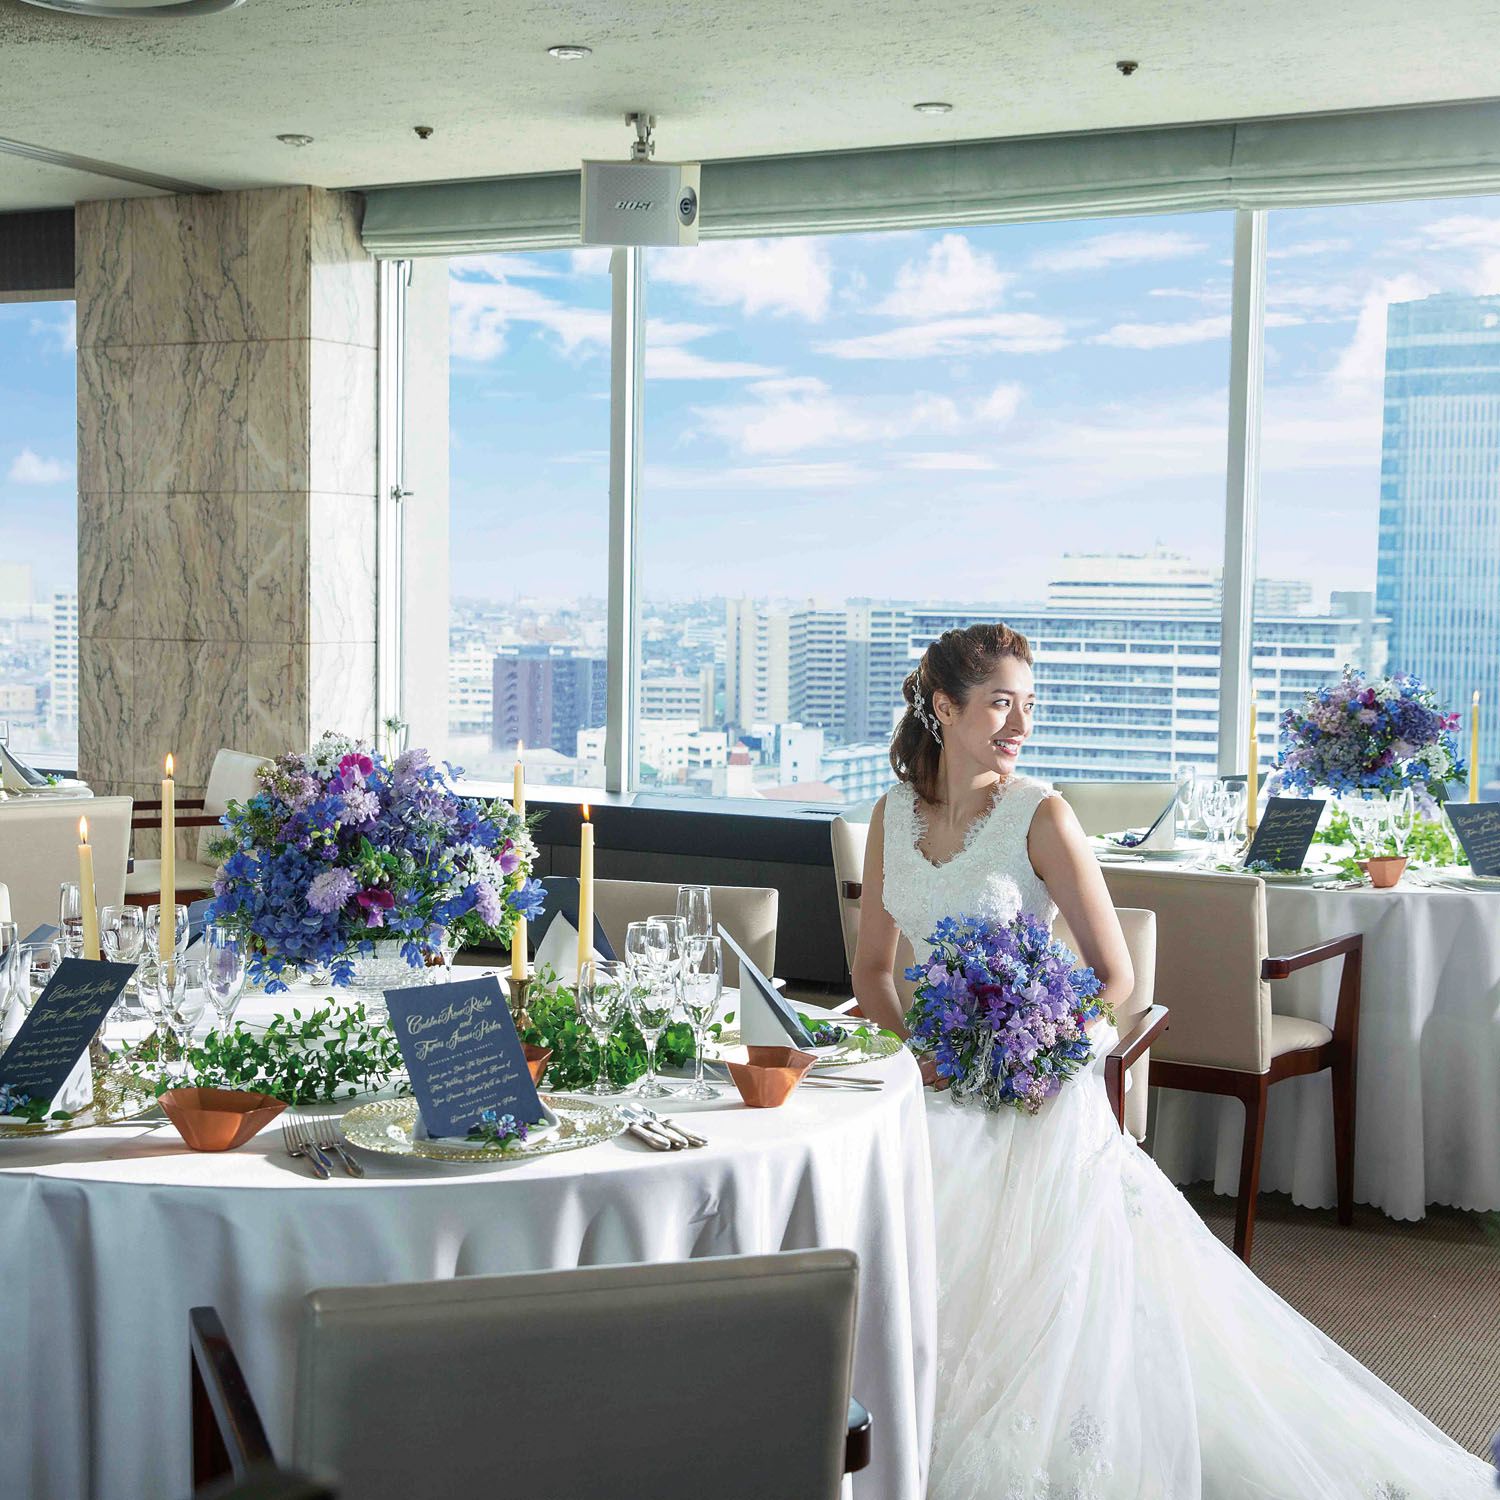 ホテルオークラ新潟 新潟 阿賀 新潟市 で結婚式を挙げよう こまちウエディング Net新潟版